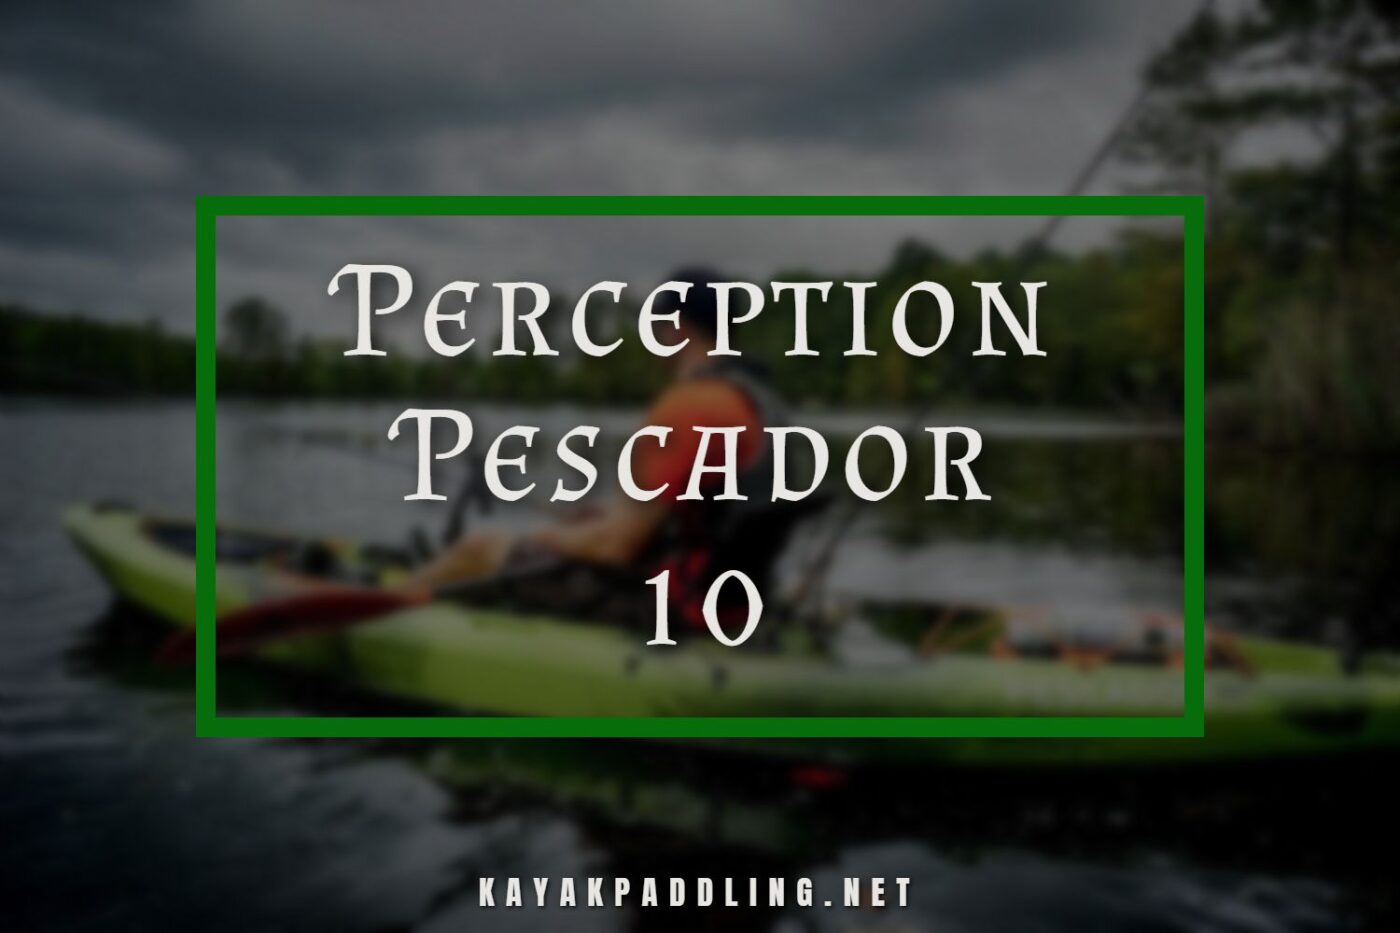 Perception Pescador 10